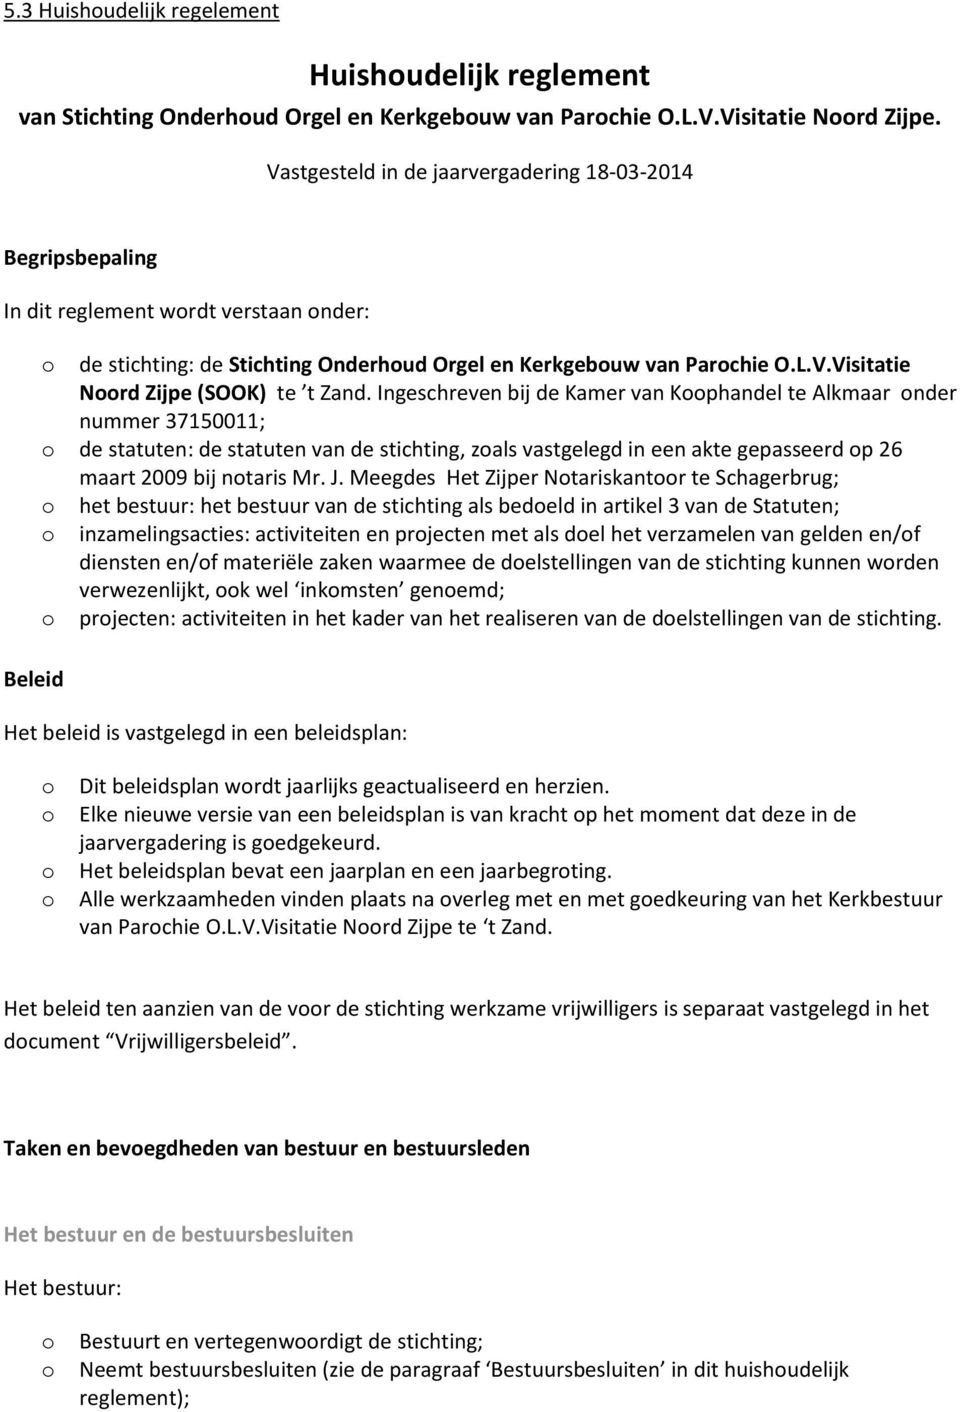 Ingeschreven bij de Kamer van Kphandel te Alkmaar nder nummer 37150011; de statuten: de statuten van de stichting, zals vastgelegd in een akte gepasseerd p 26 maart 2009 bij ntaris Mr. J.